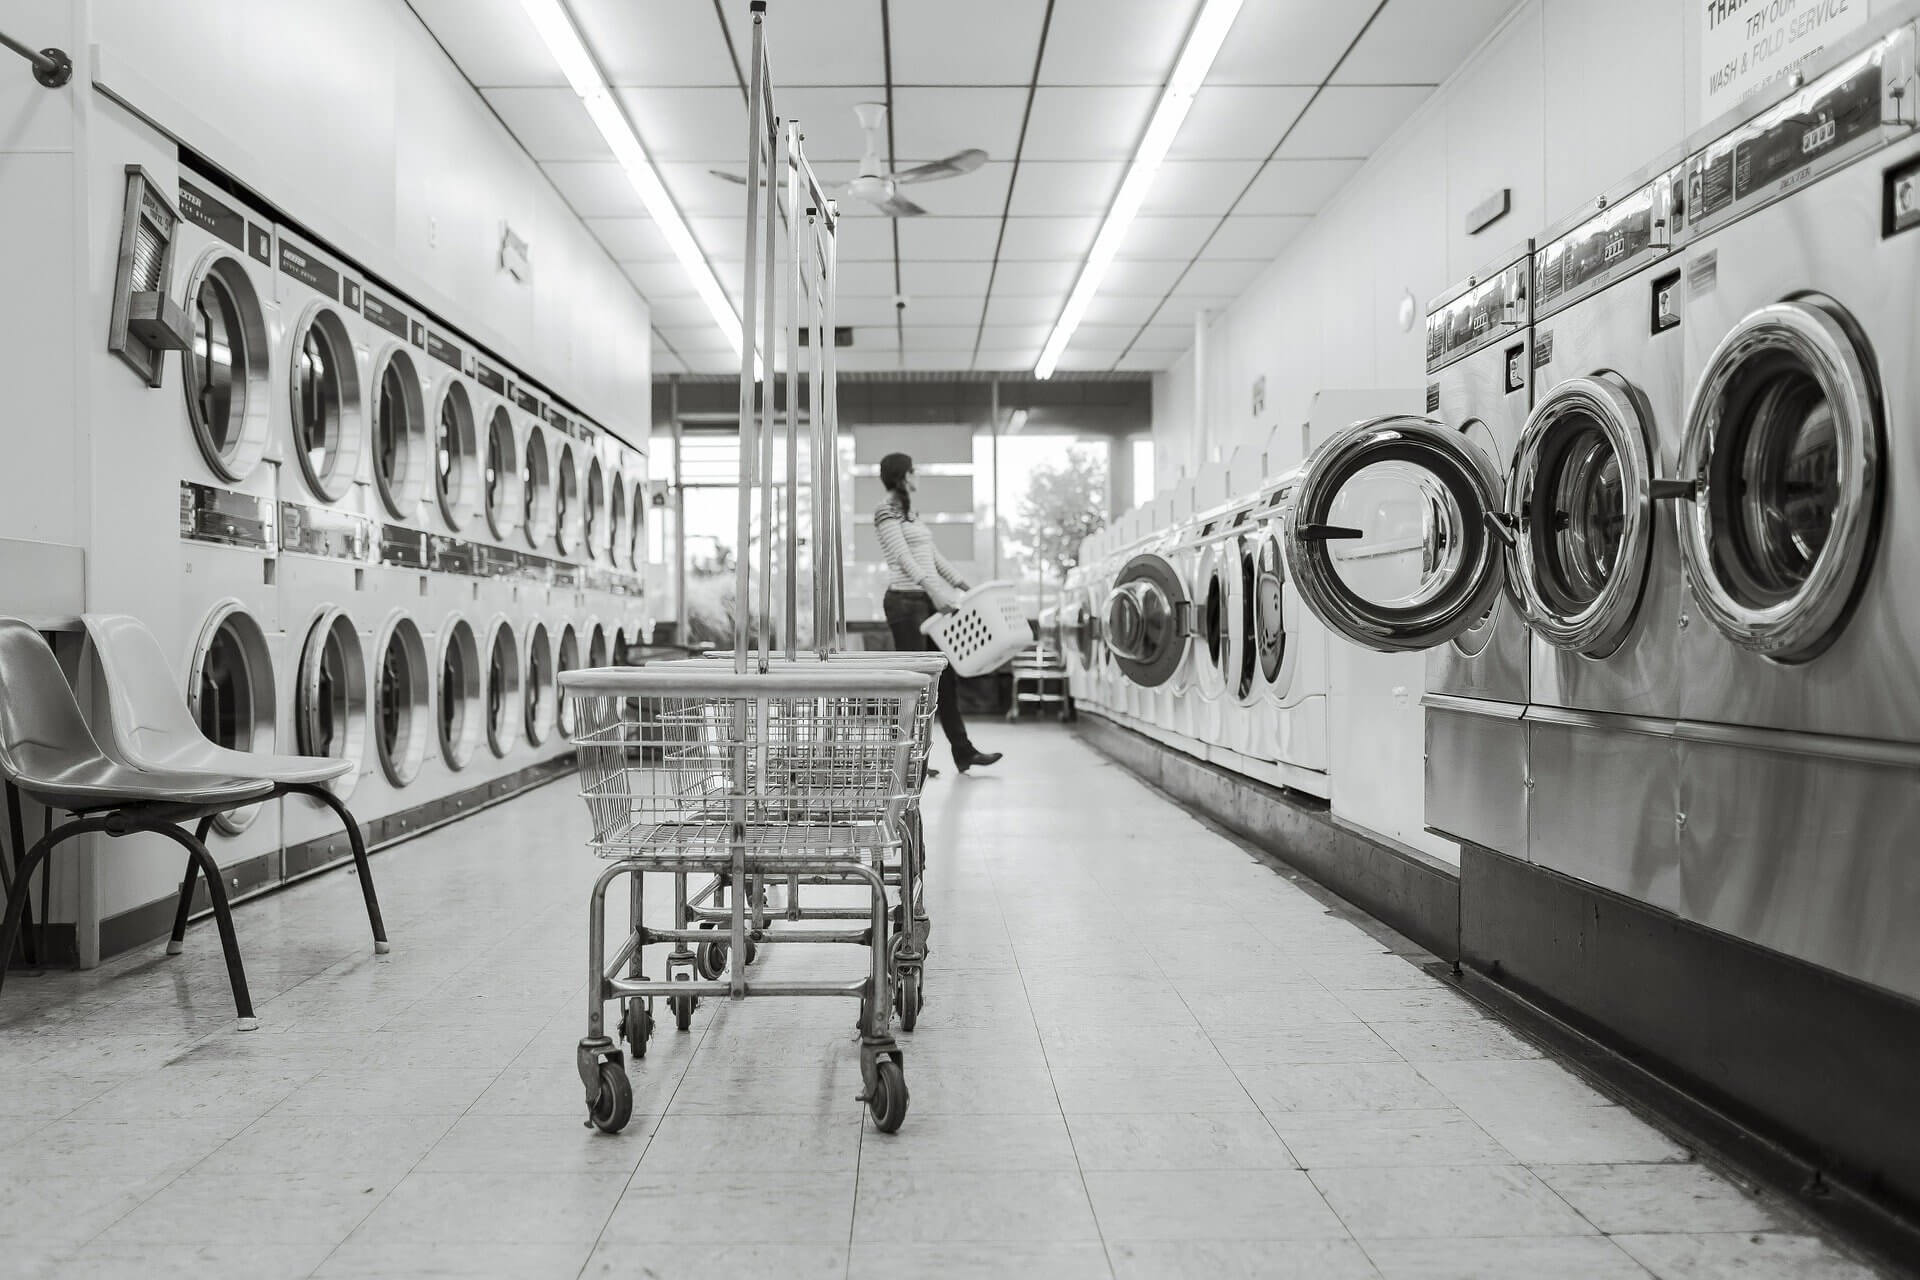 Pralnictwo przemysłowe - Koszty oraz ceny wyposażenia pralni Materiał partnera